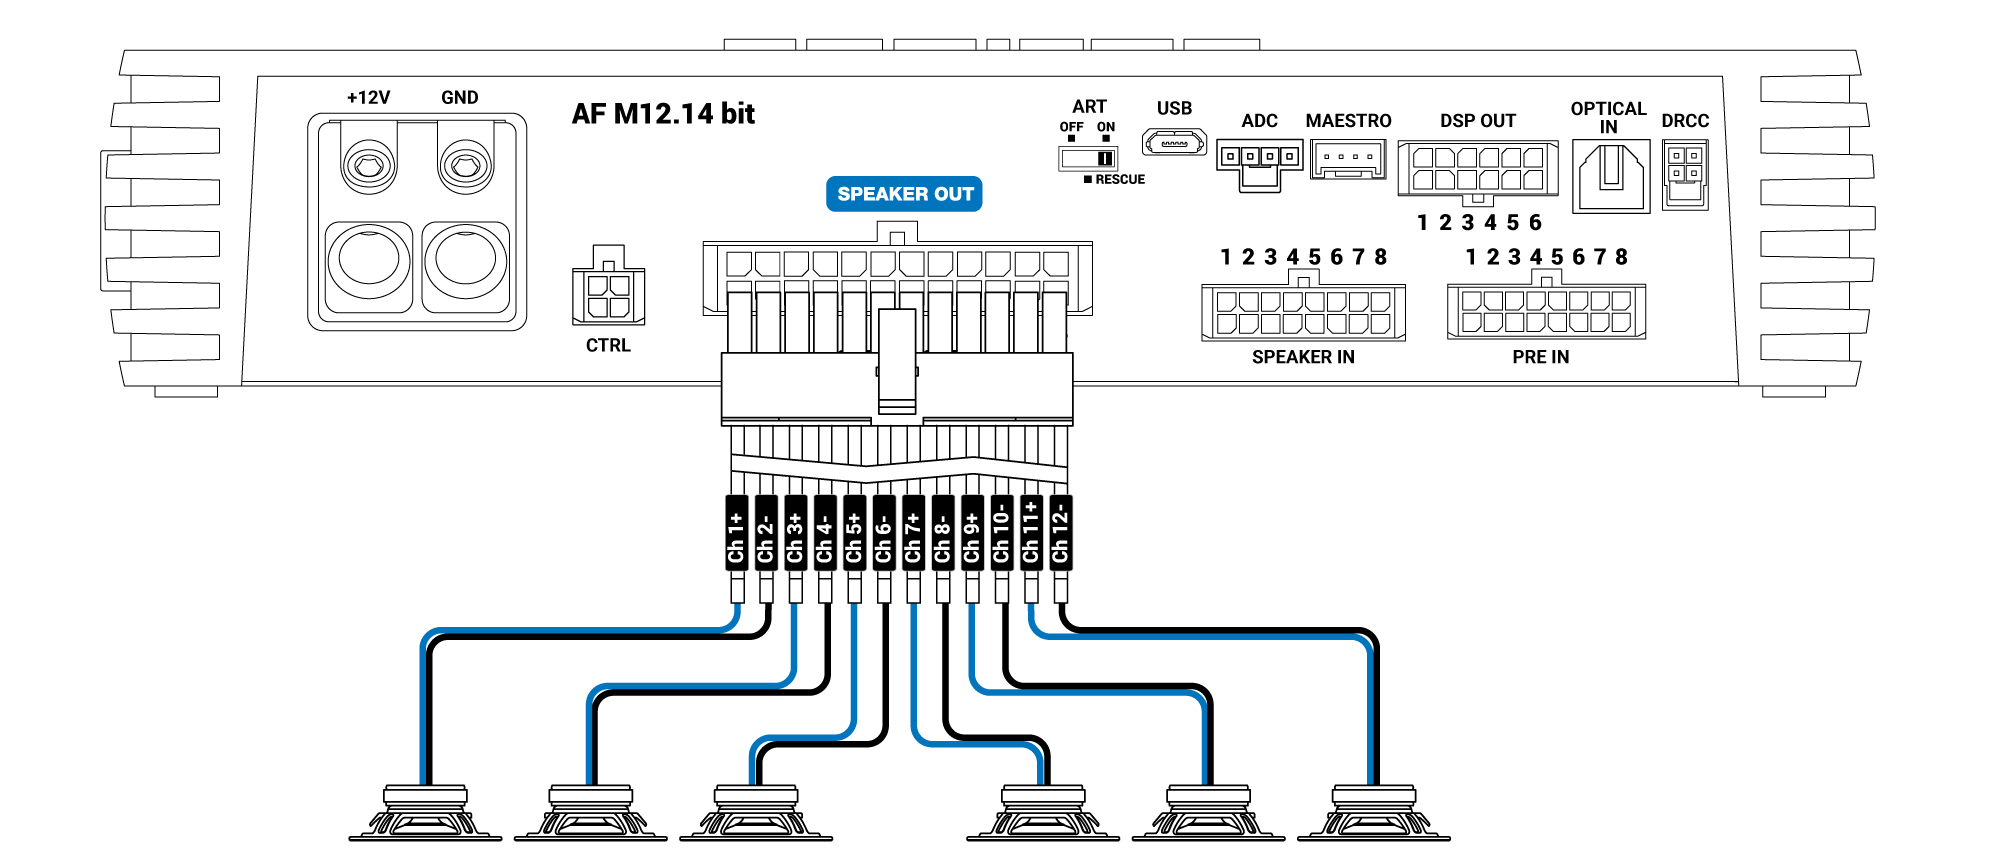 Speaker-out-AF-M12.14-bit-a-ponte.png